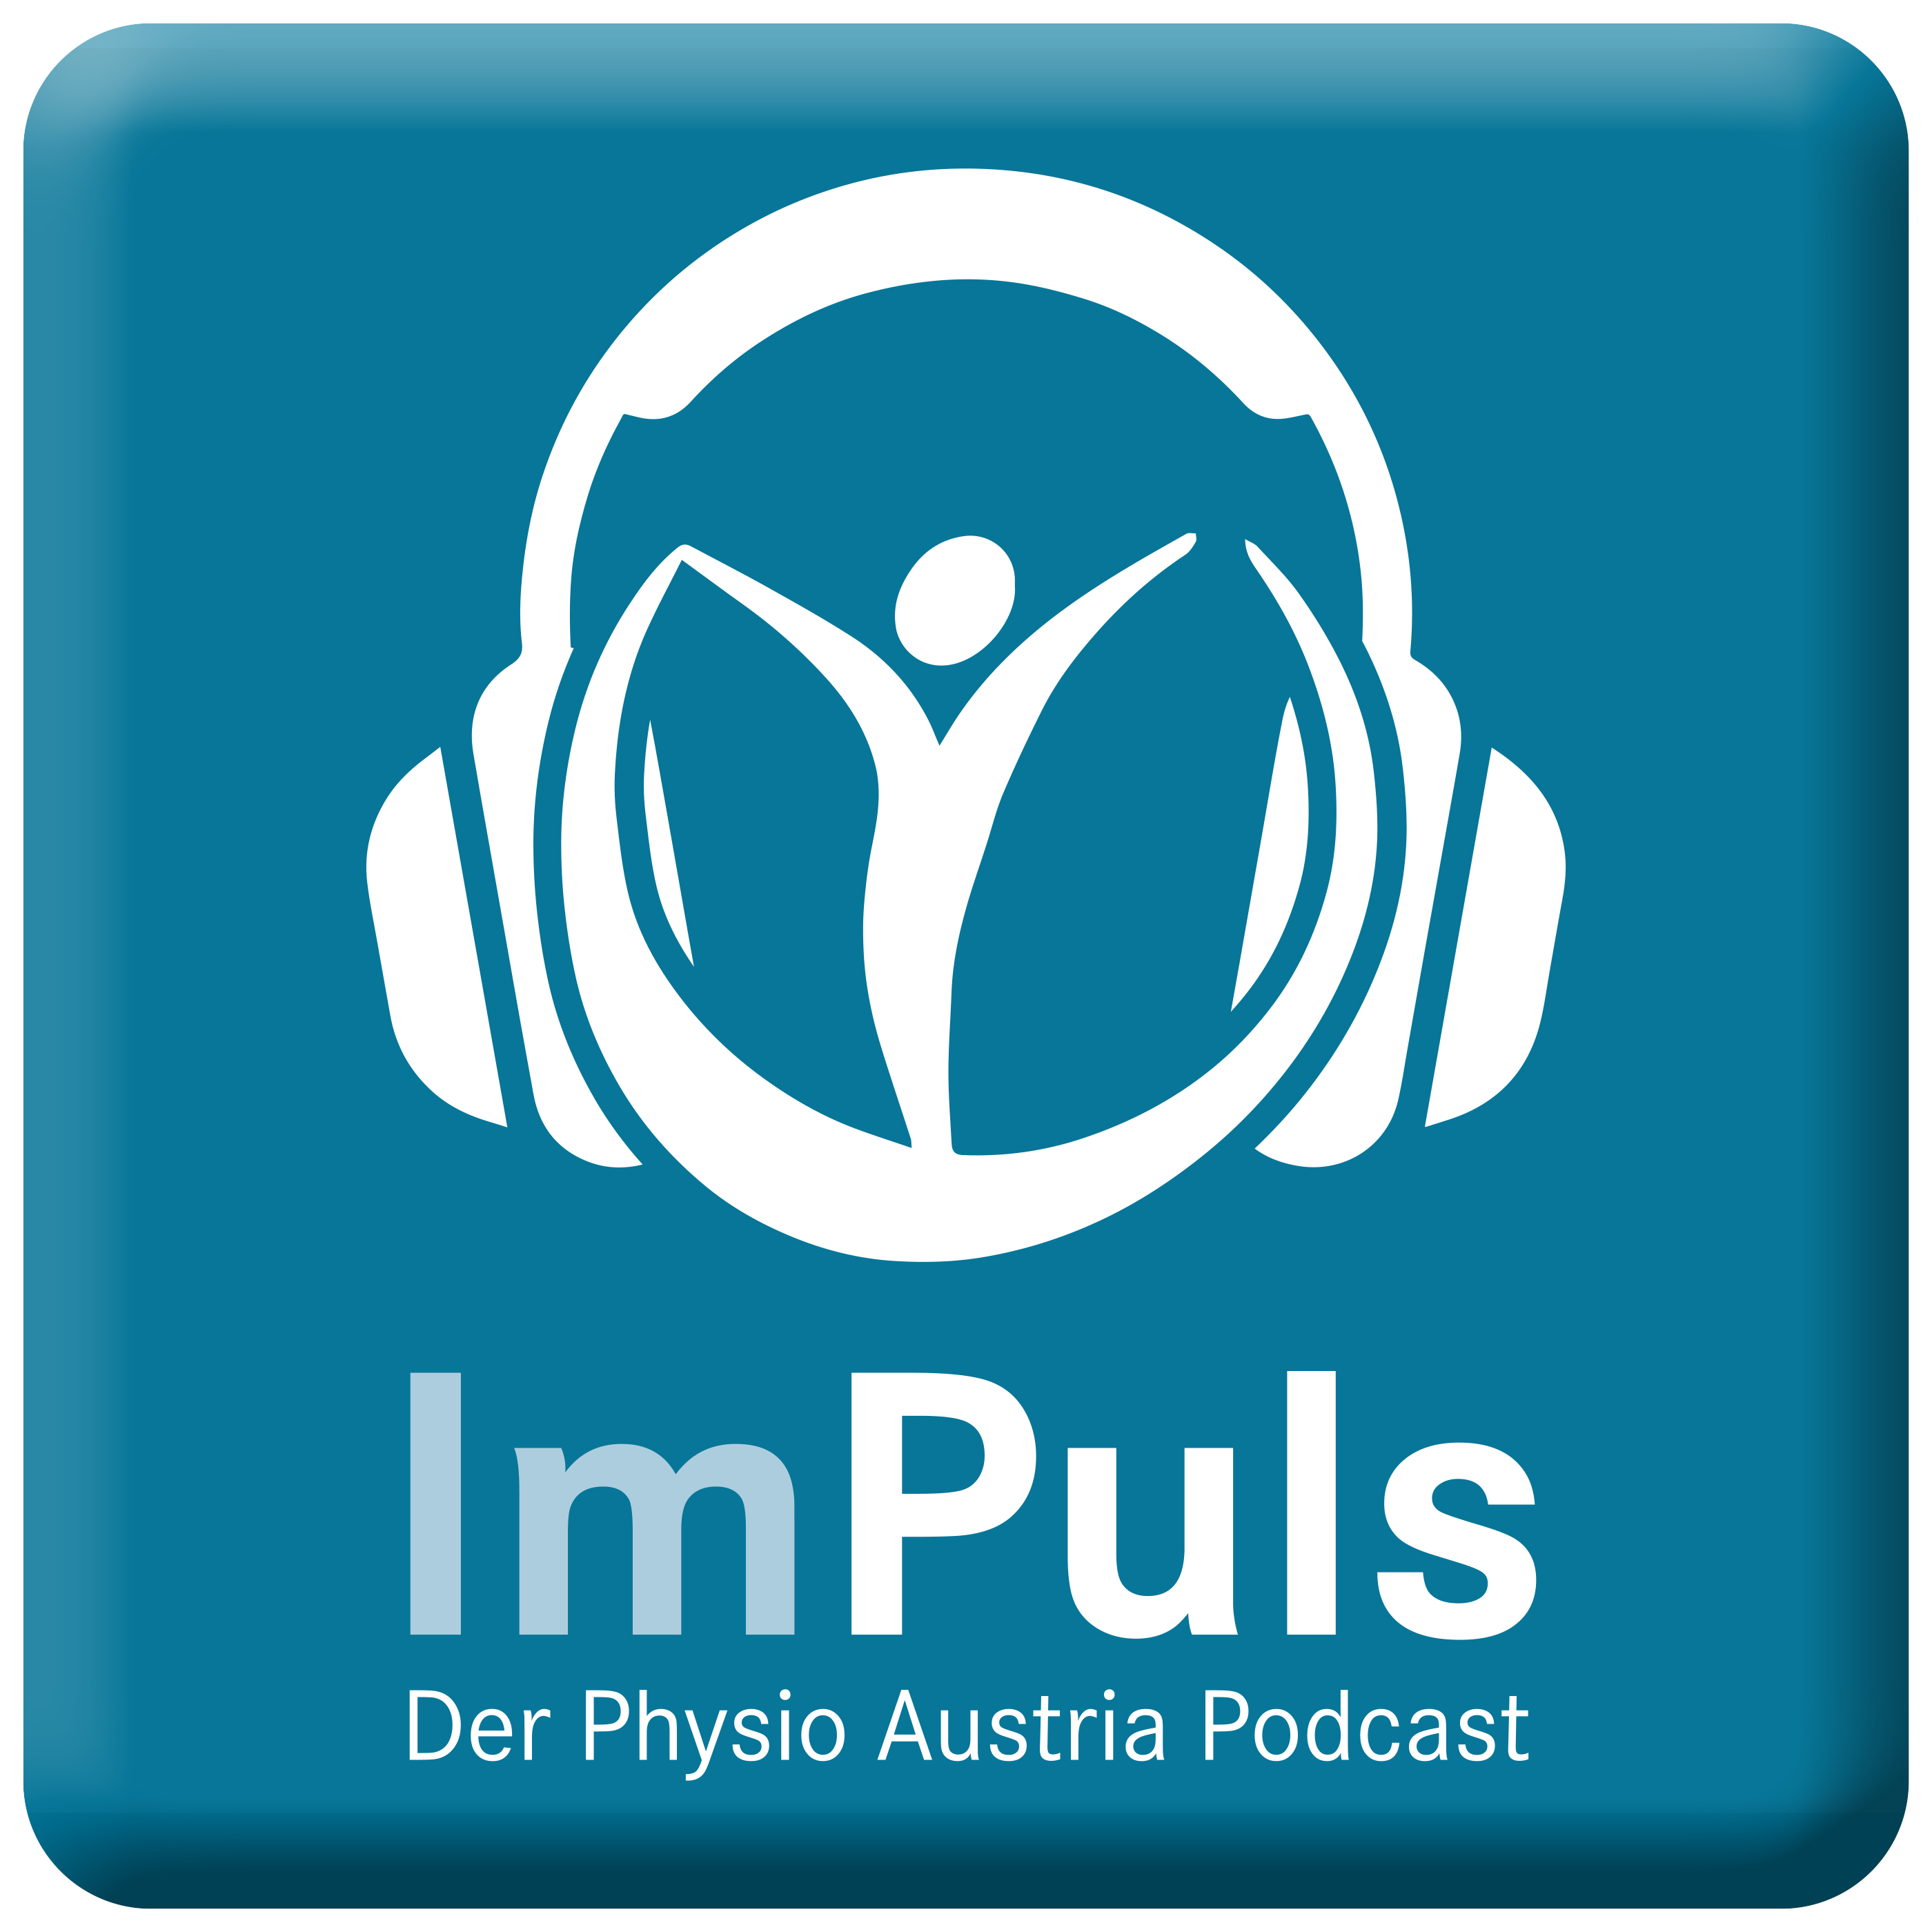 ImPuls, der Physio Austria Podcast